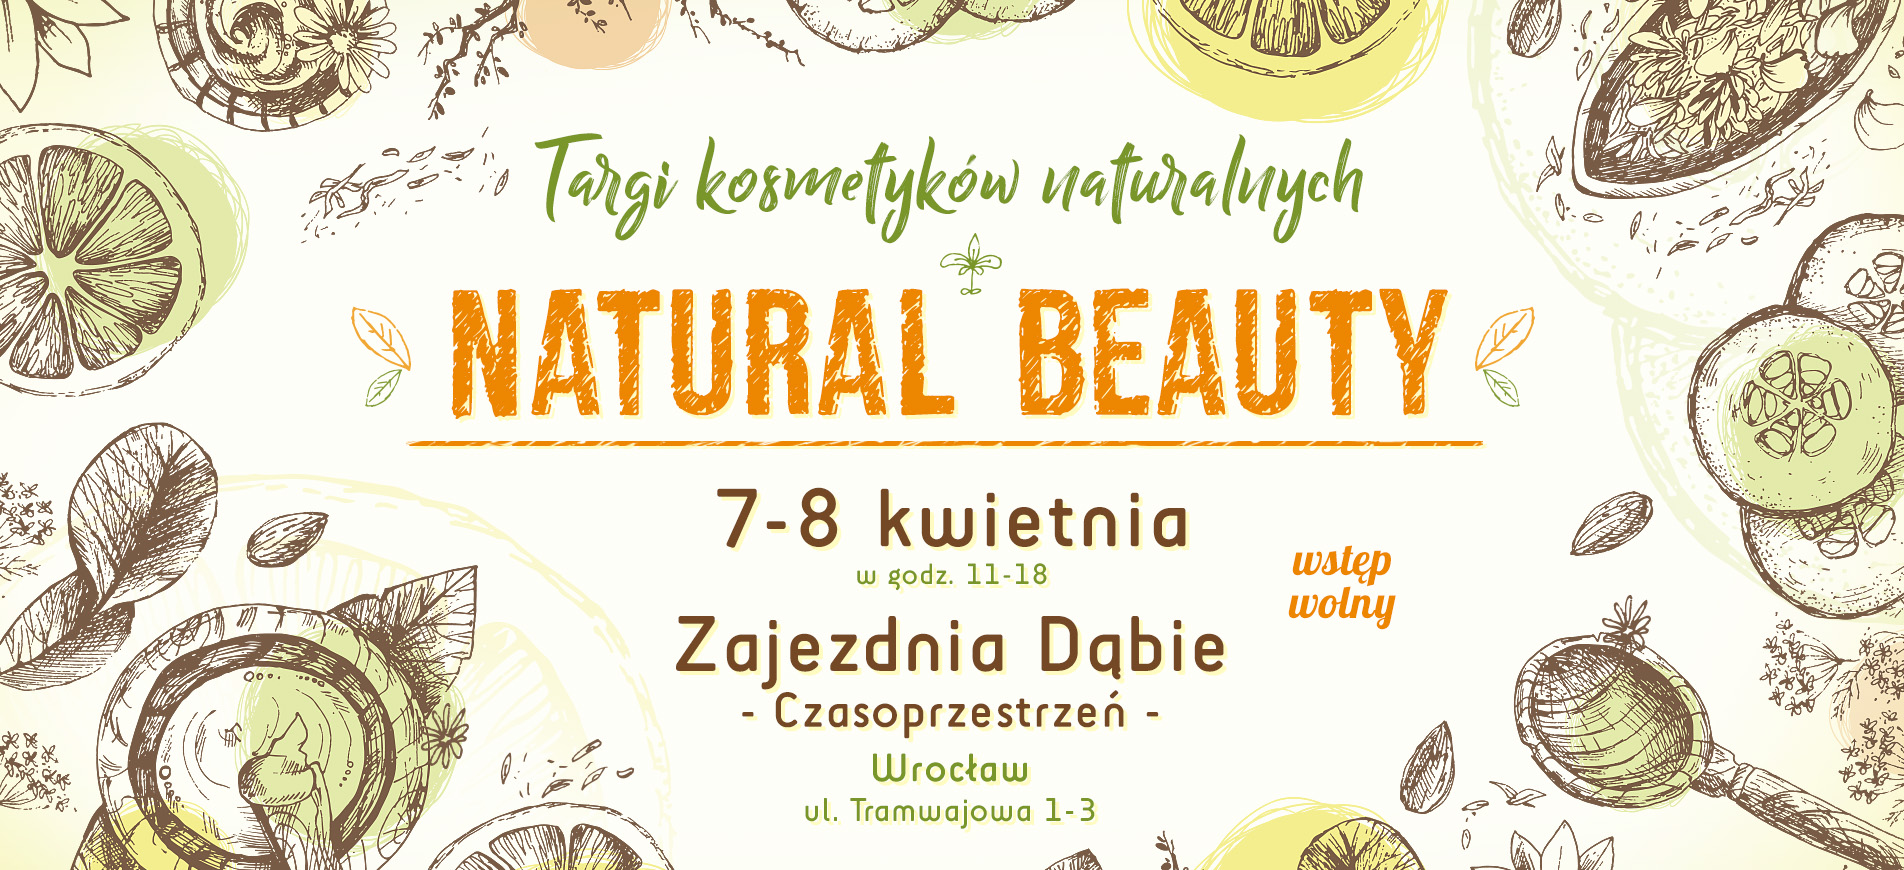 Wrocław: trend na naturalne kosmetyki przyciąga odwiedzających targi